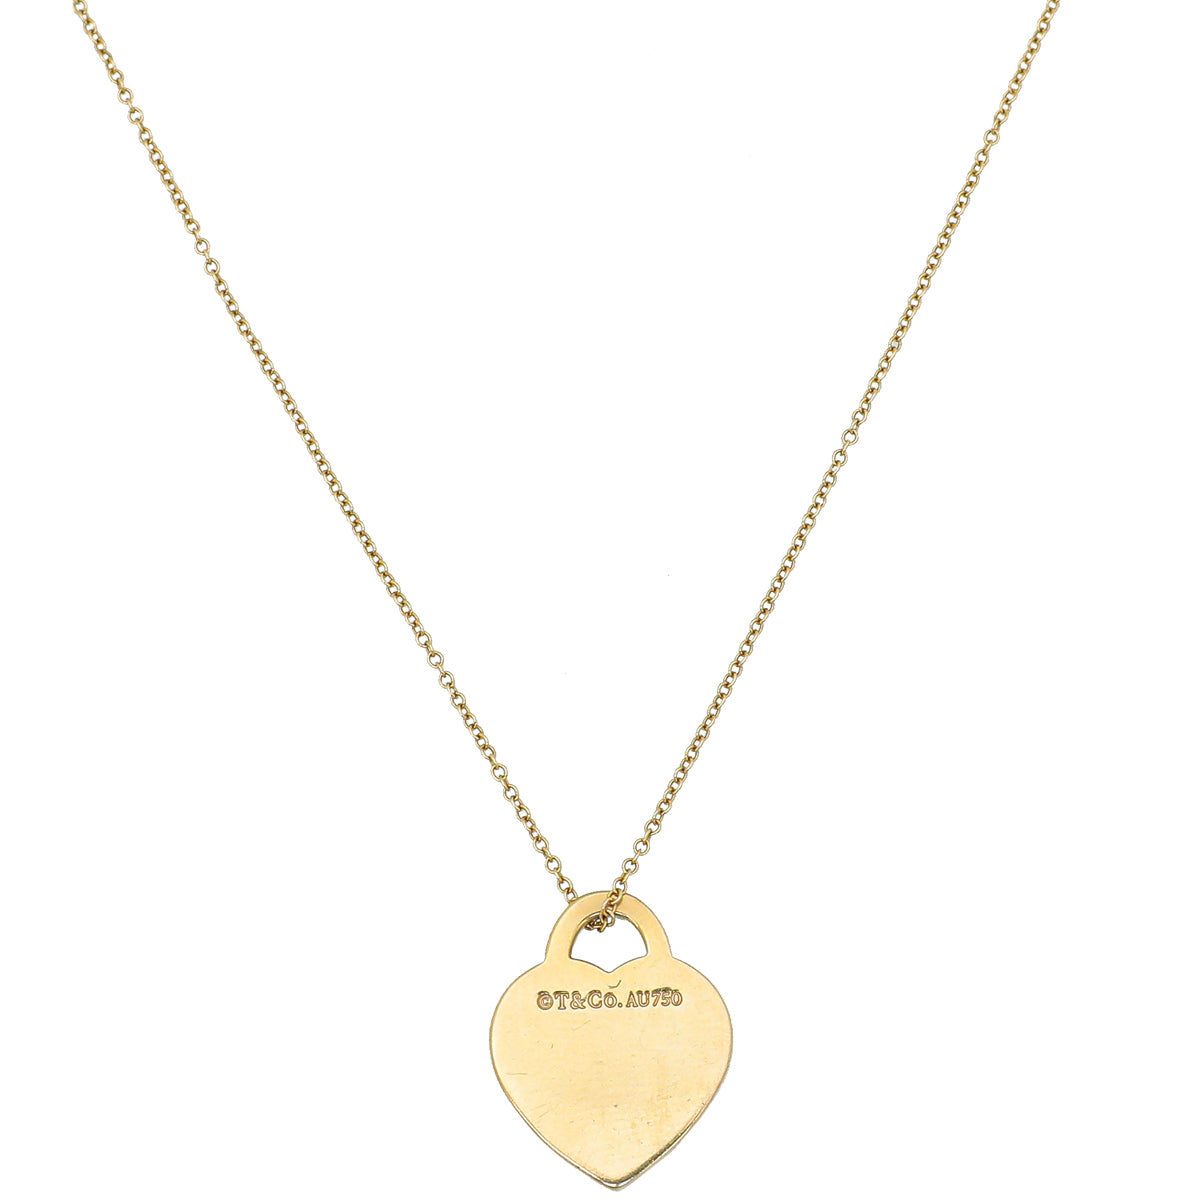 Tiffany's double heart tag necklace | Heart necklace tiffany, Tiffany and co  necklace, Pink heart necklace